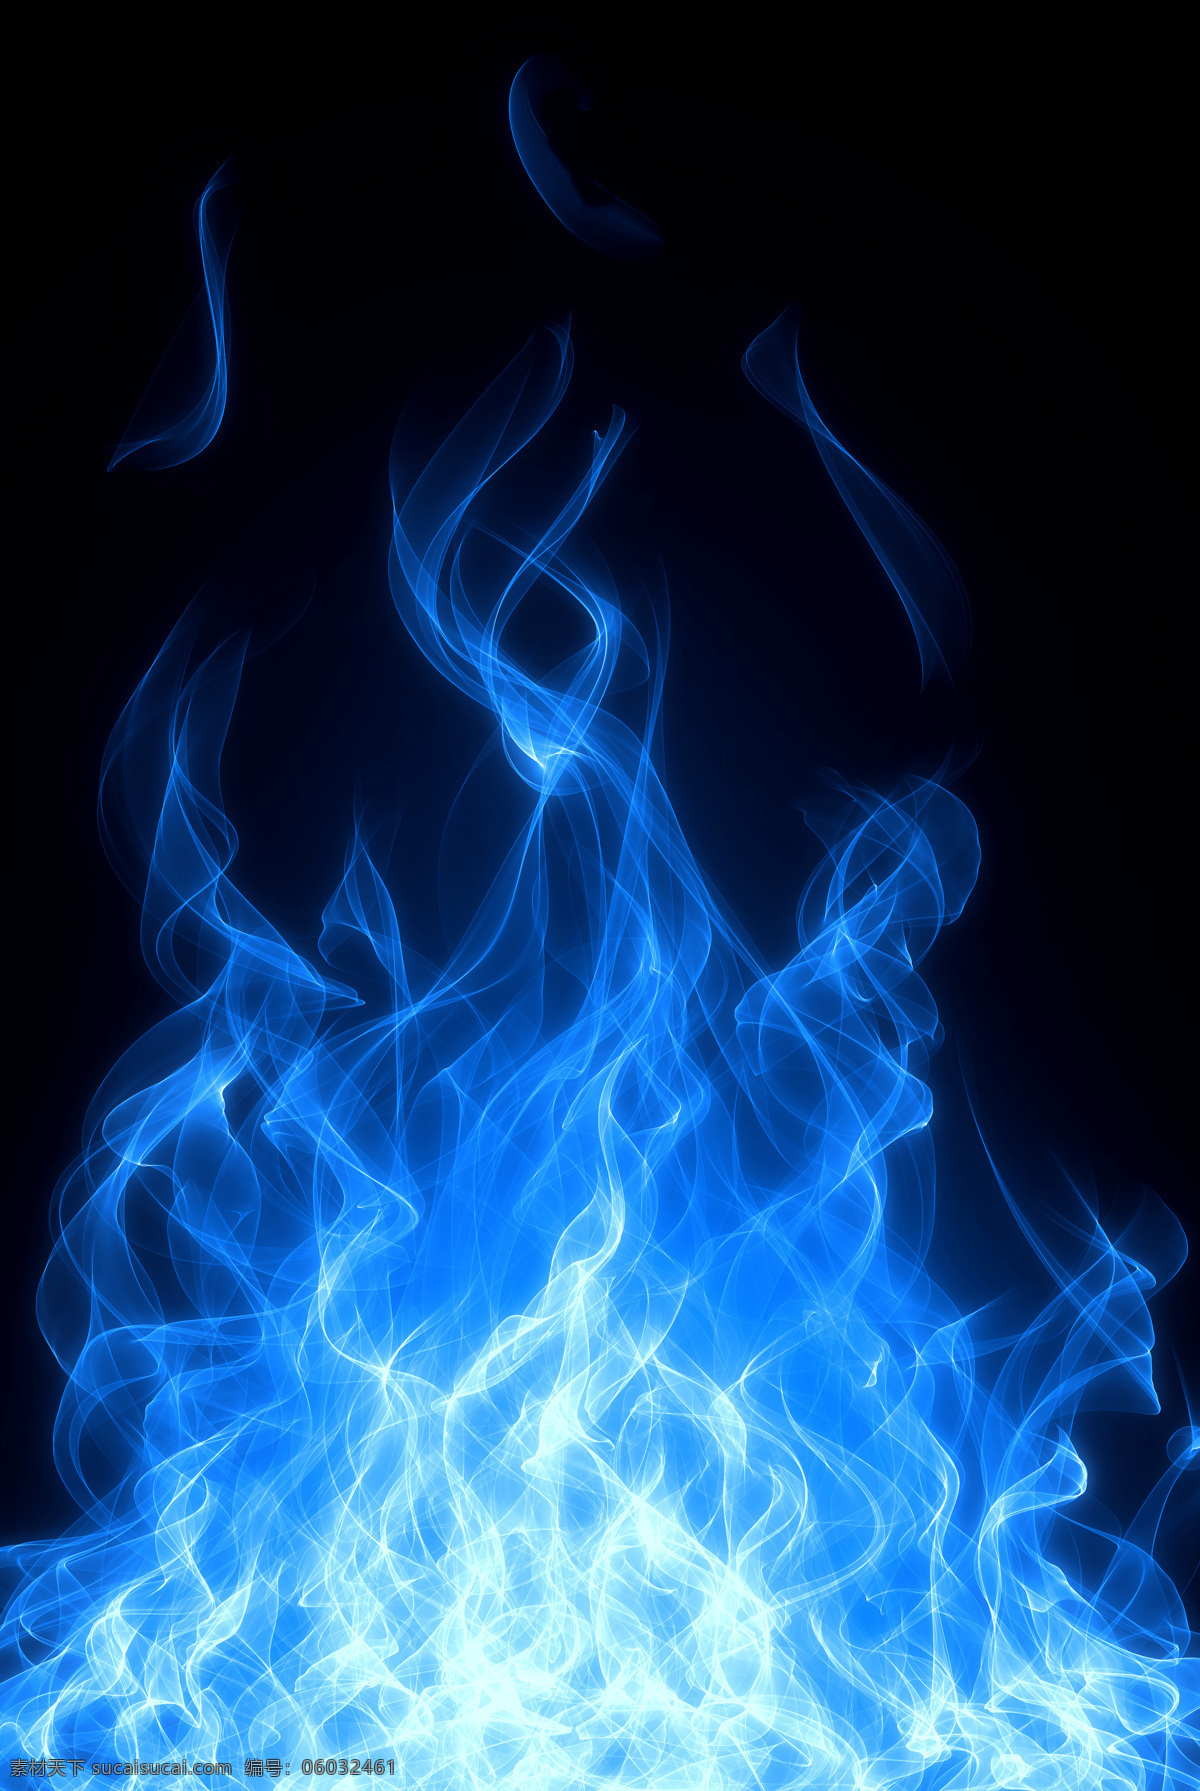 蓝色 梦幻 火焰 背景图片 蓝色火焰 火苗 大火 燃烧 梦幻火焰背景 梦幻火焰 冰水烈火 生活百科 黑色